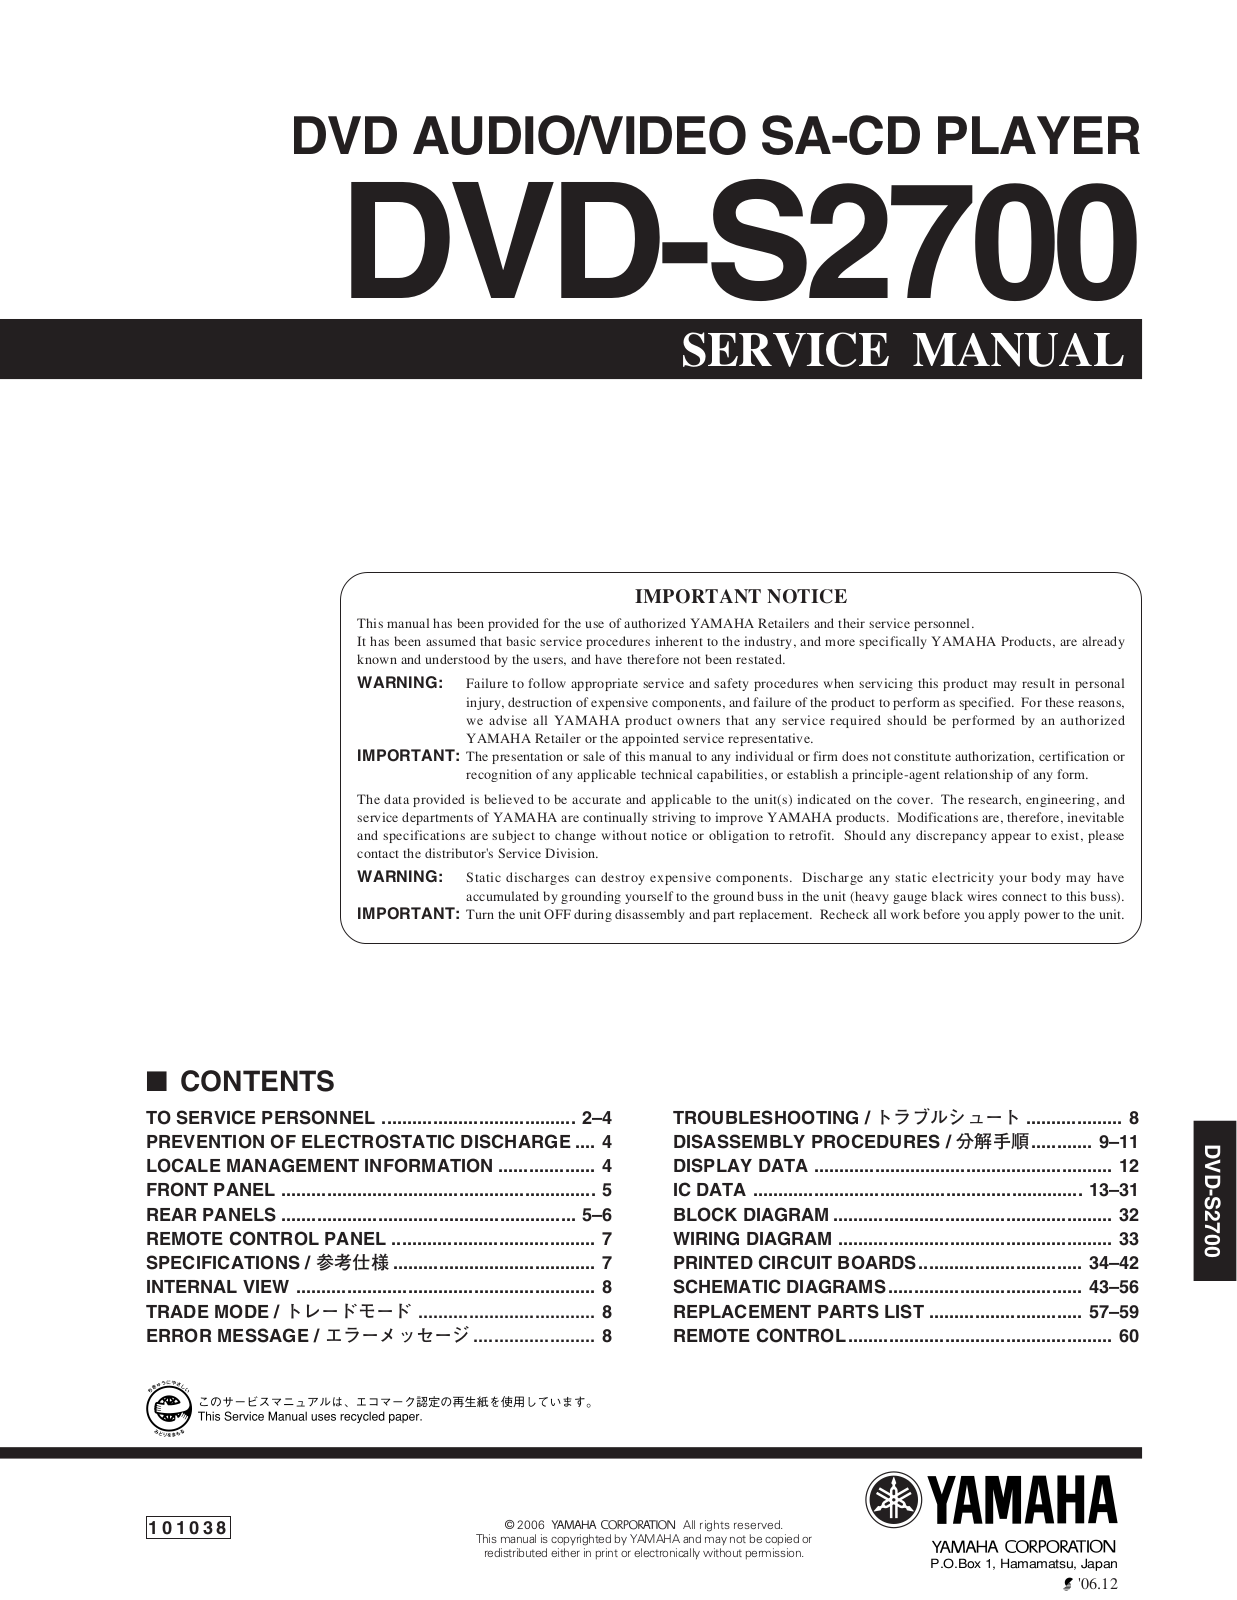 Yamaha DVDS-2700 Service manual